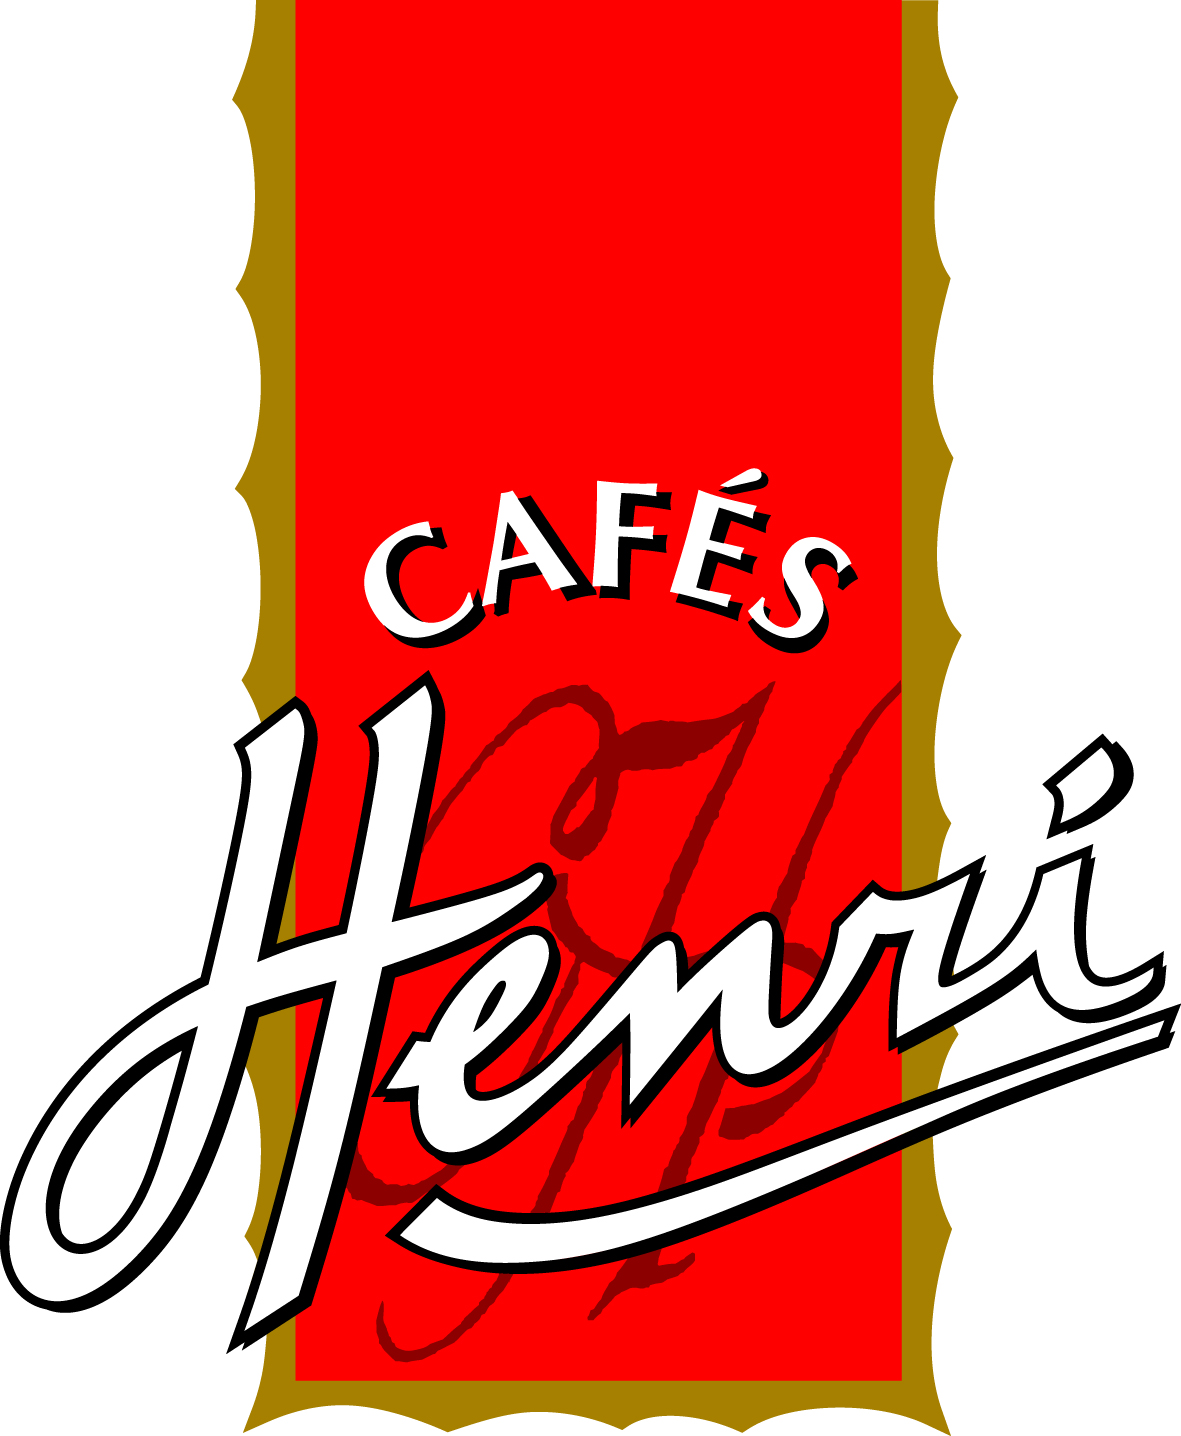 CAFES HENRI